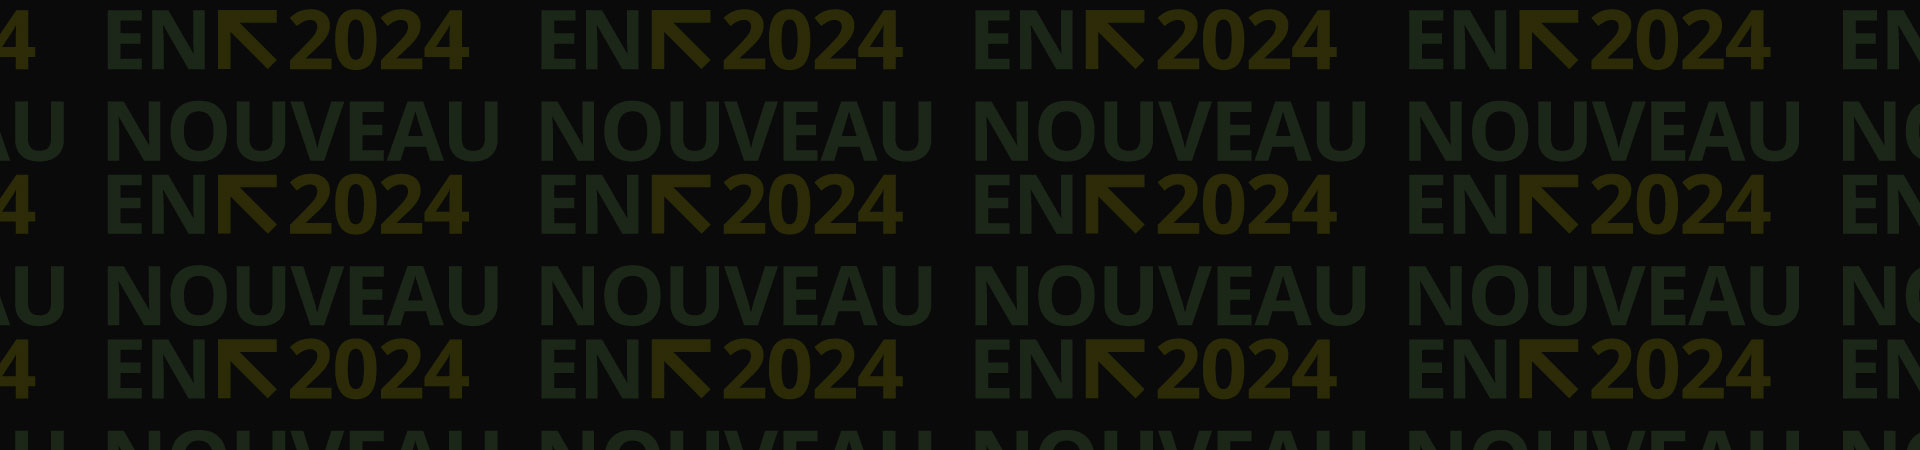 Nouveau En 2024